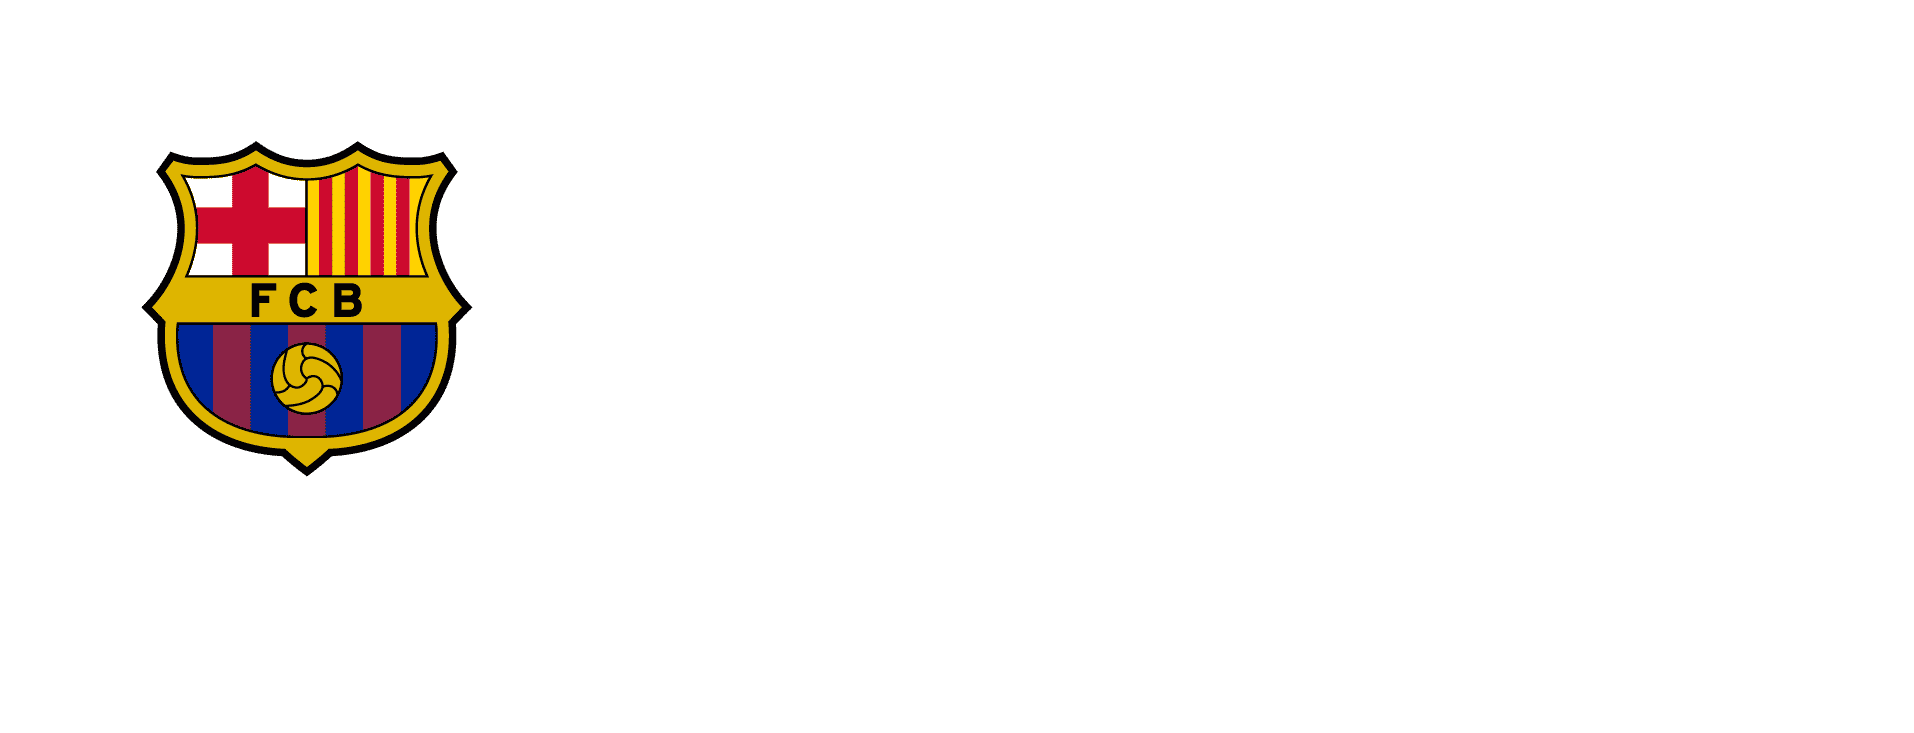 Partner Barcelona innovation hub universitas